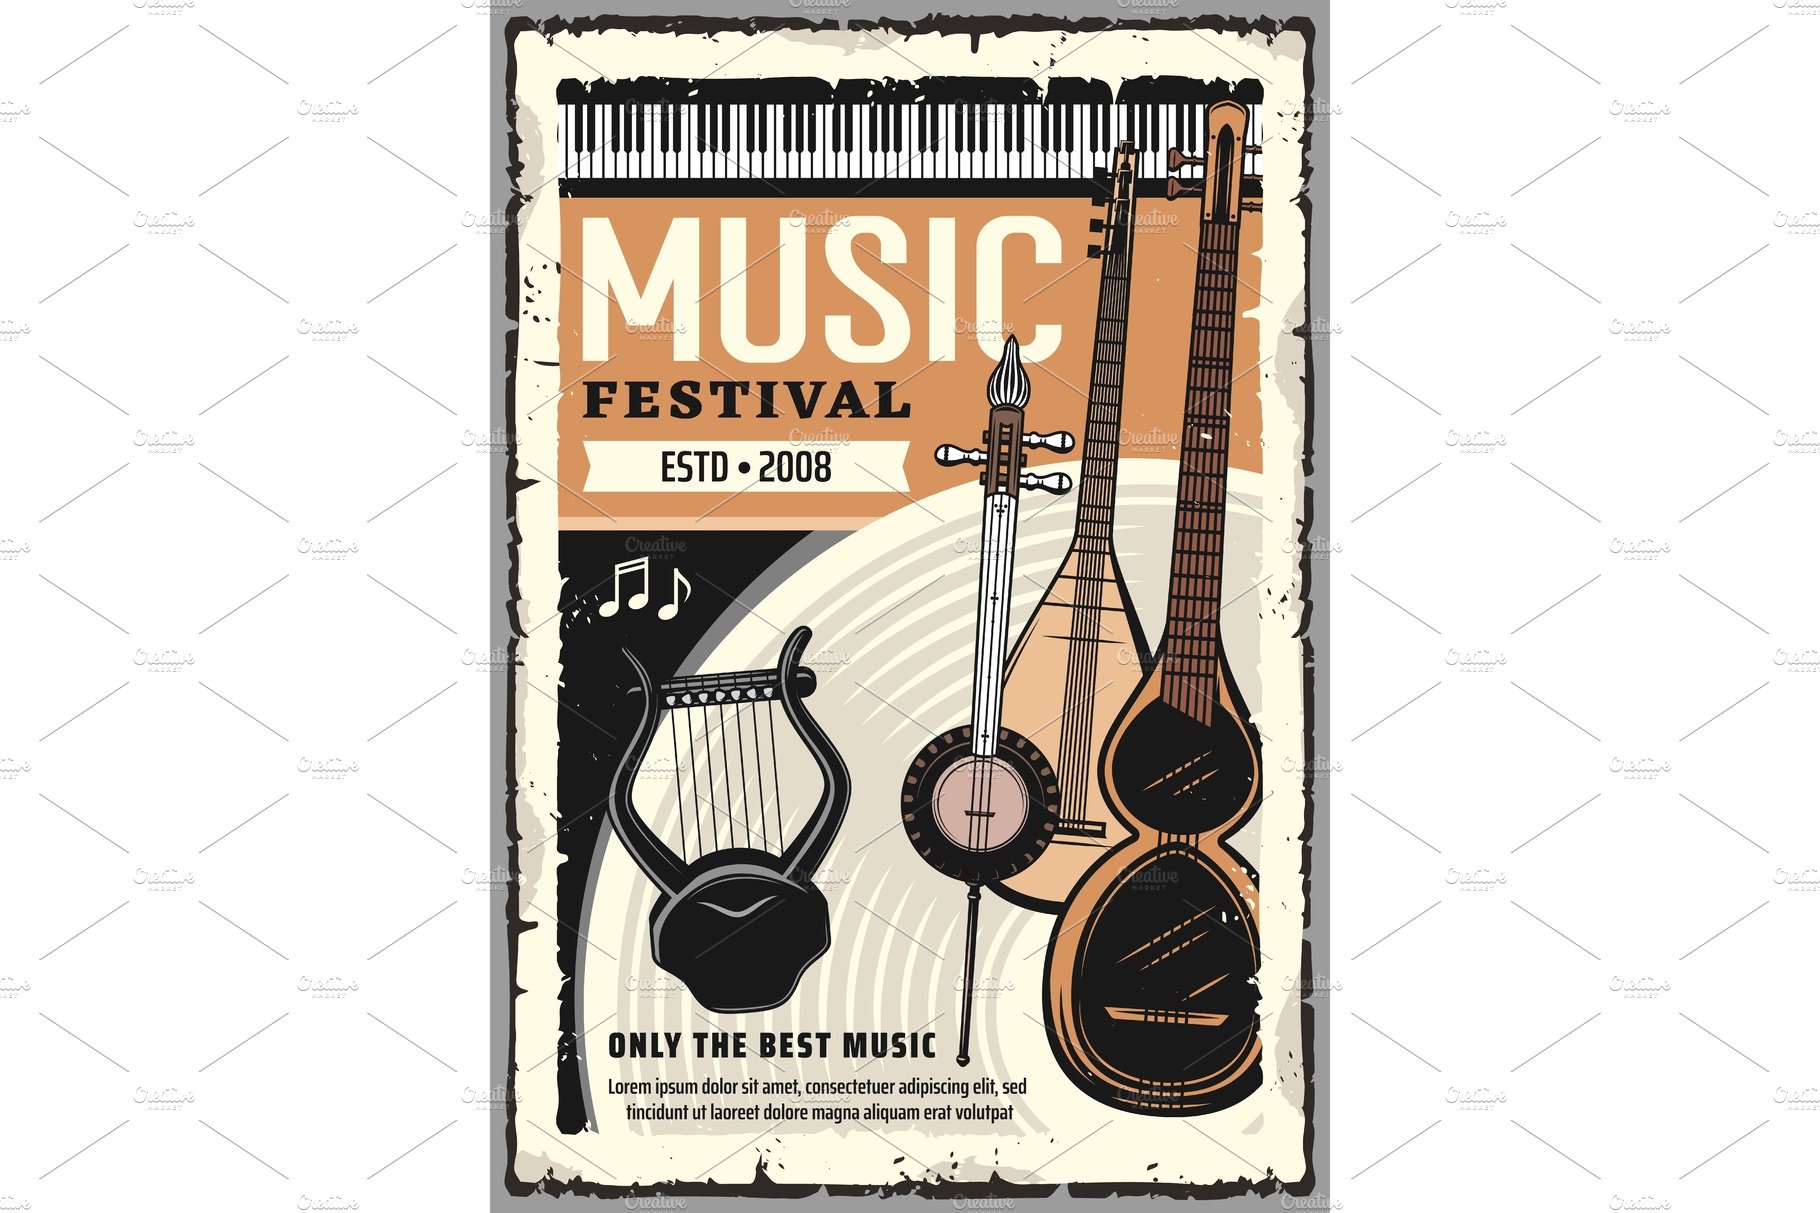 Music festival, live folk music cover image.